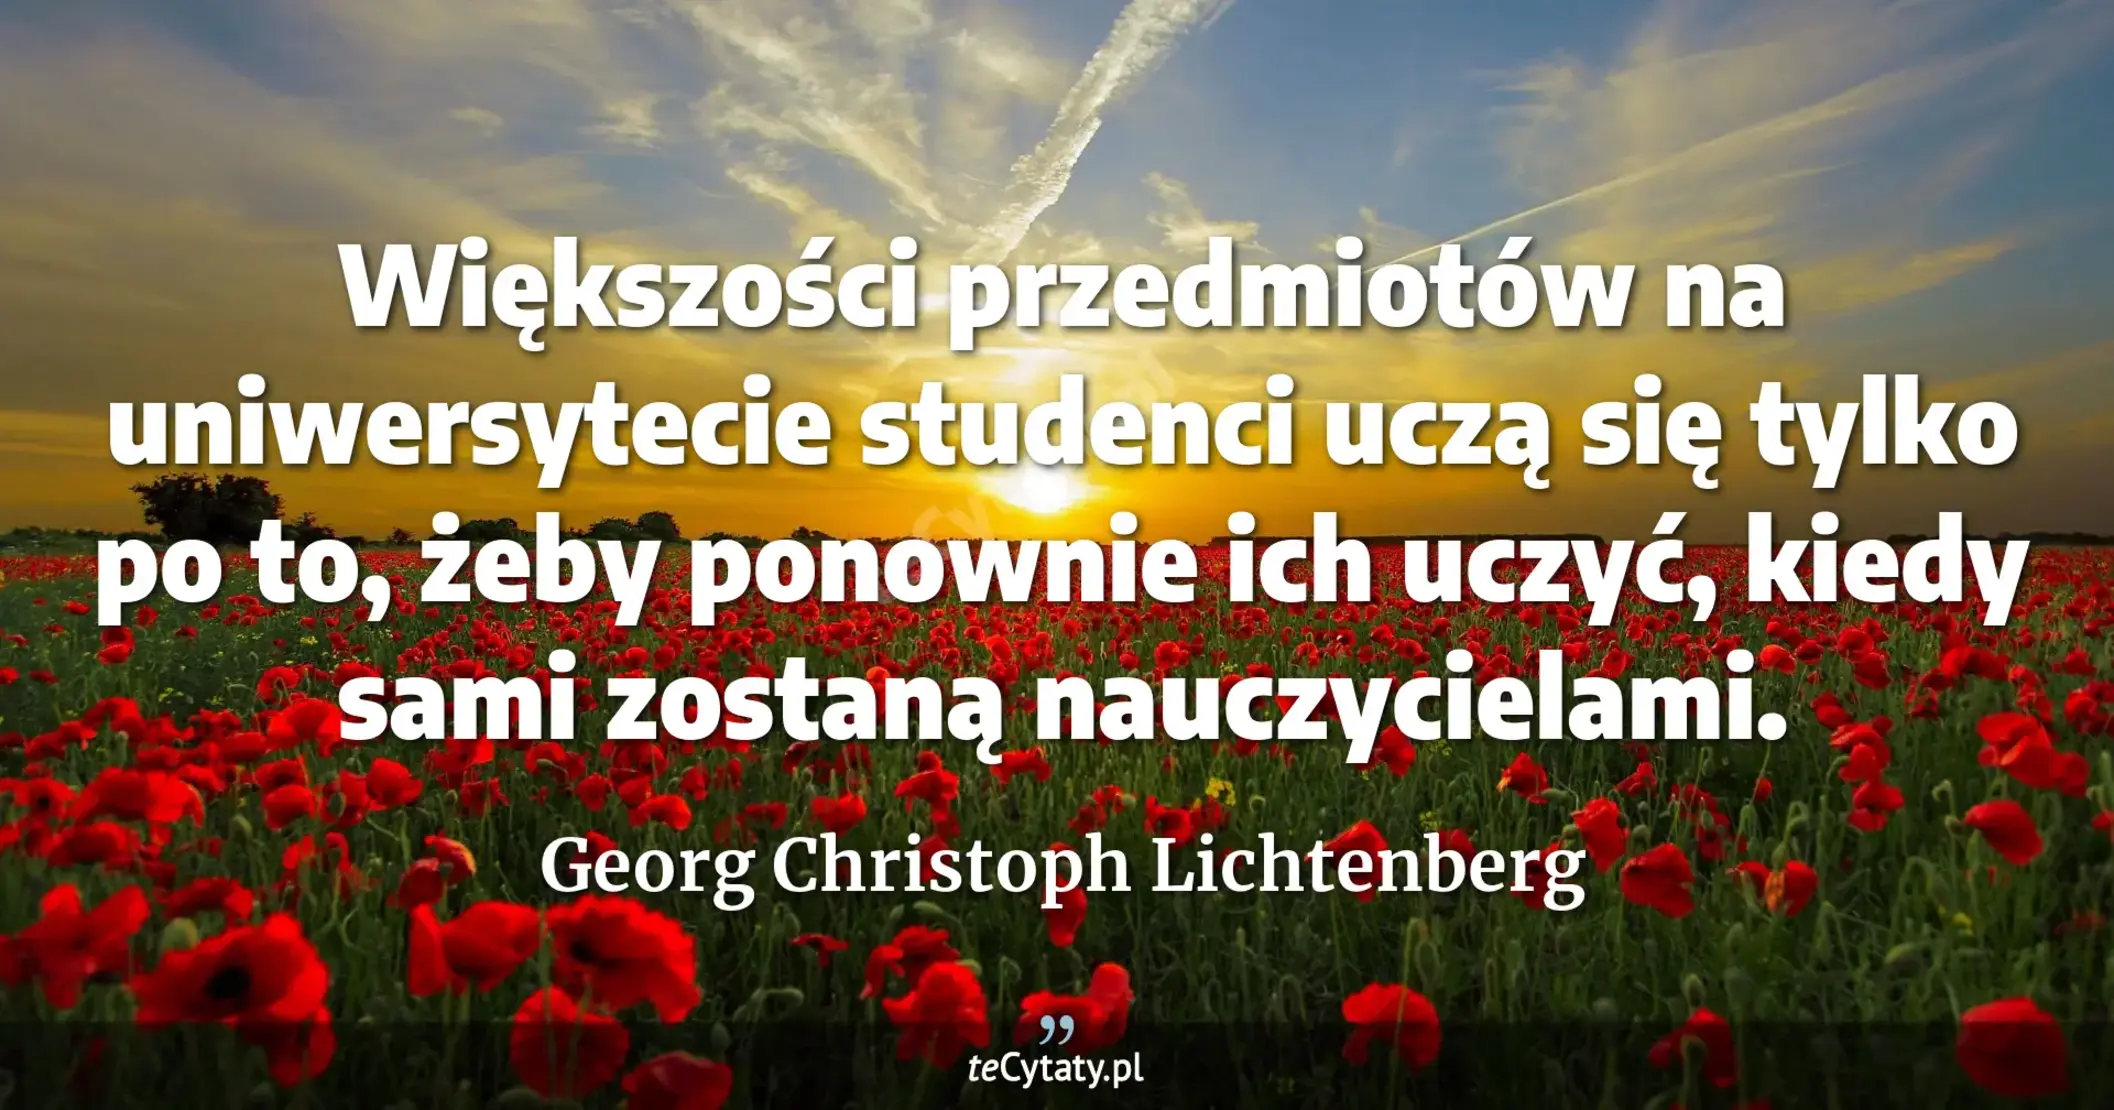 Większości przedmiotów na uniwersytecie studenci uczą się tylko po to, żeby ponownie ich uczyć, kiedy sami zostaną nauczycielami. - Georg Christoph Lichtenberg